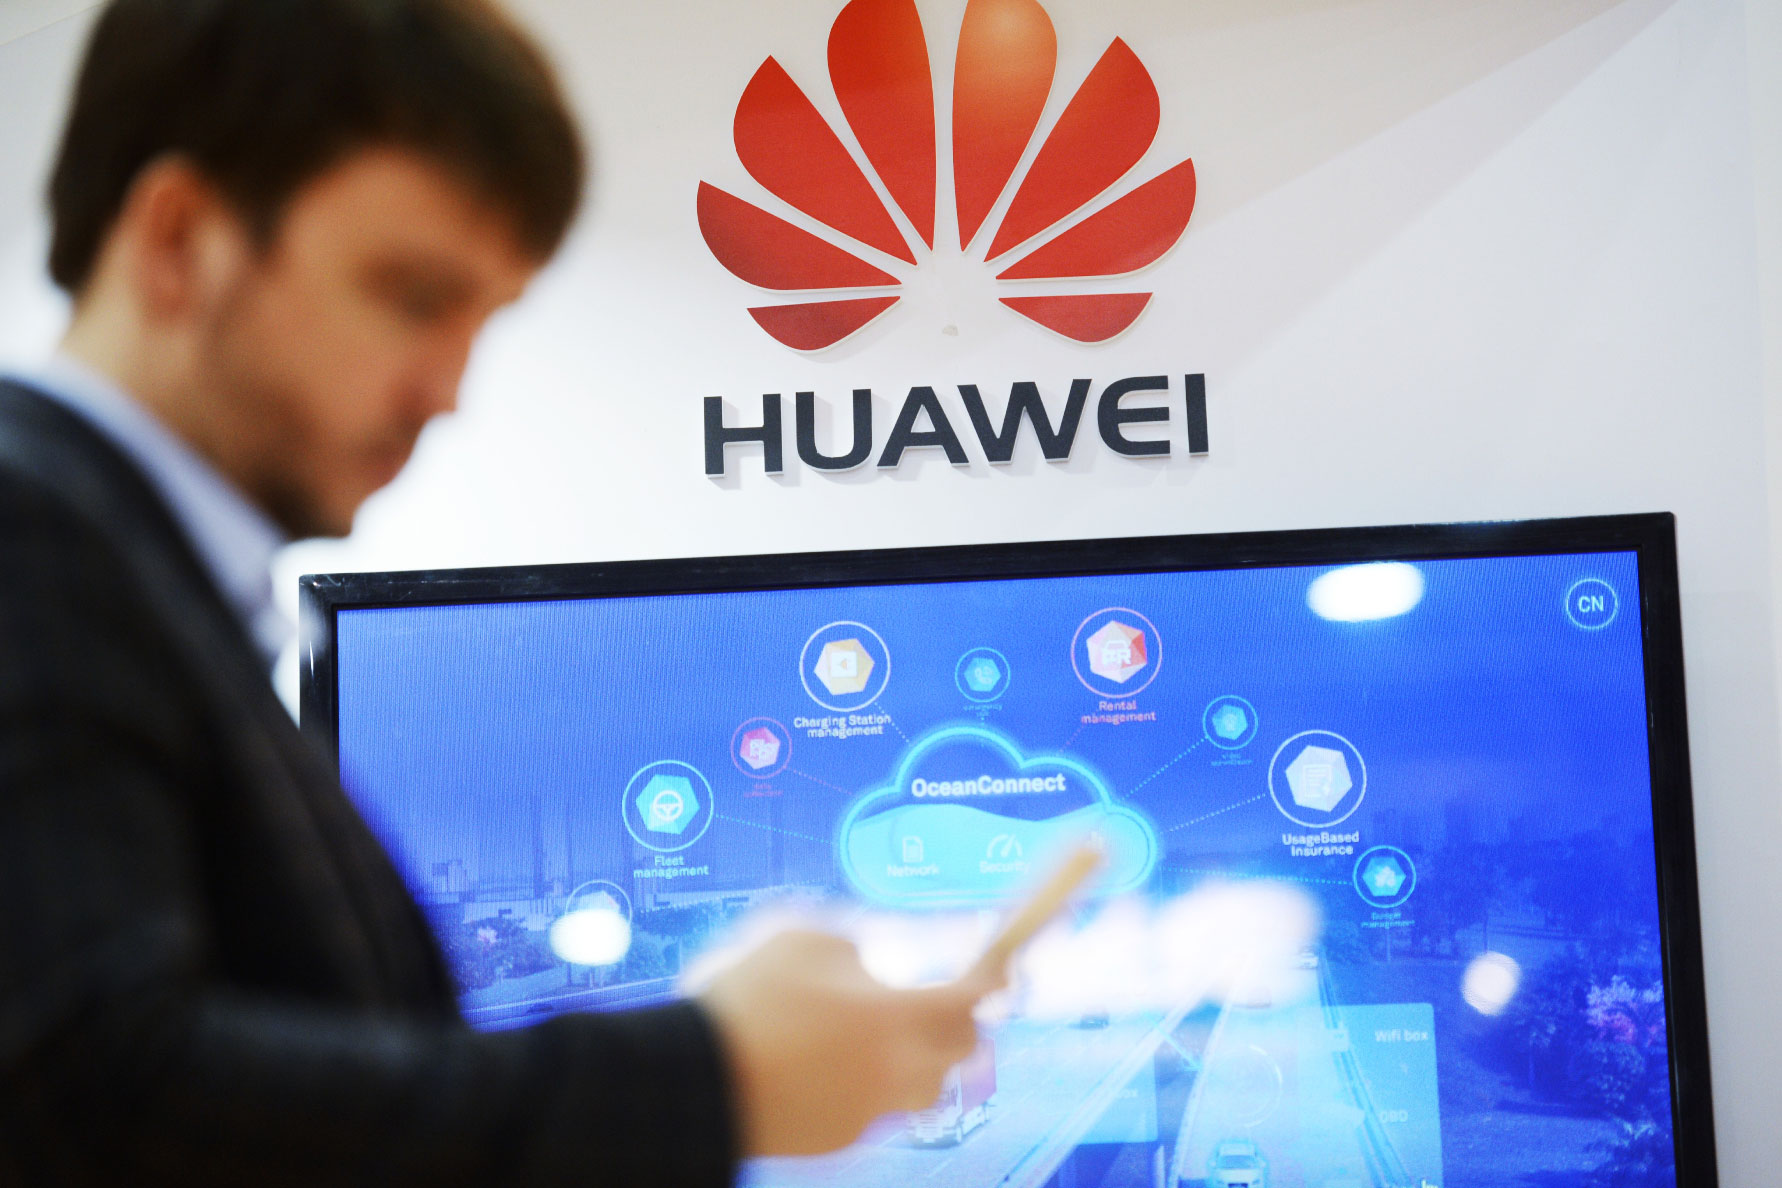 ԱՄՆ կառավարությունը Huawei ընկերության դեմ մեղադրանք է ներկայացրել դատարան